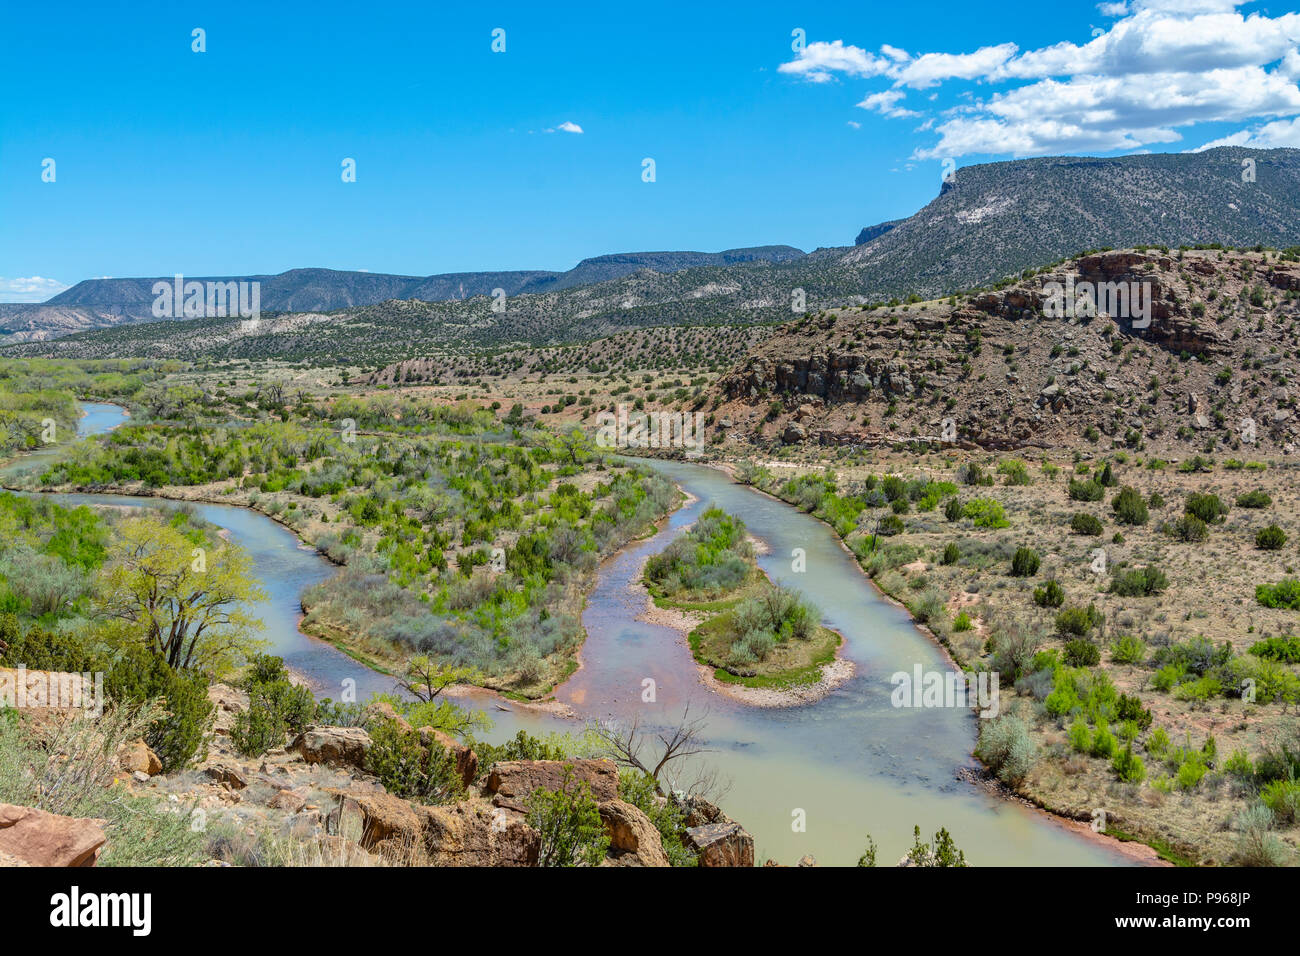 New Mexico, Rio Arriba County, Chama River Stock Photo